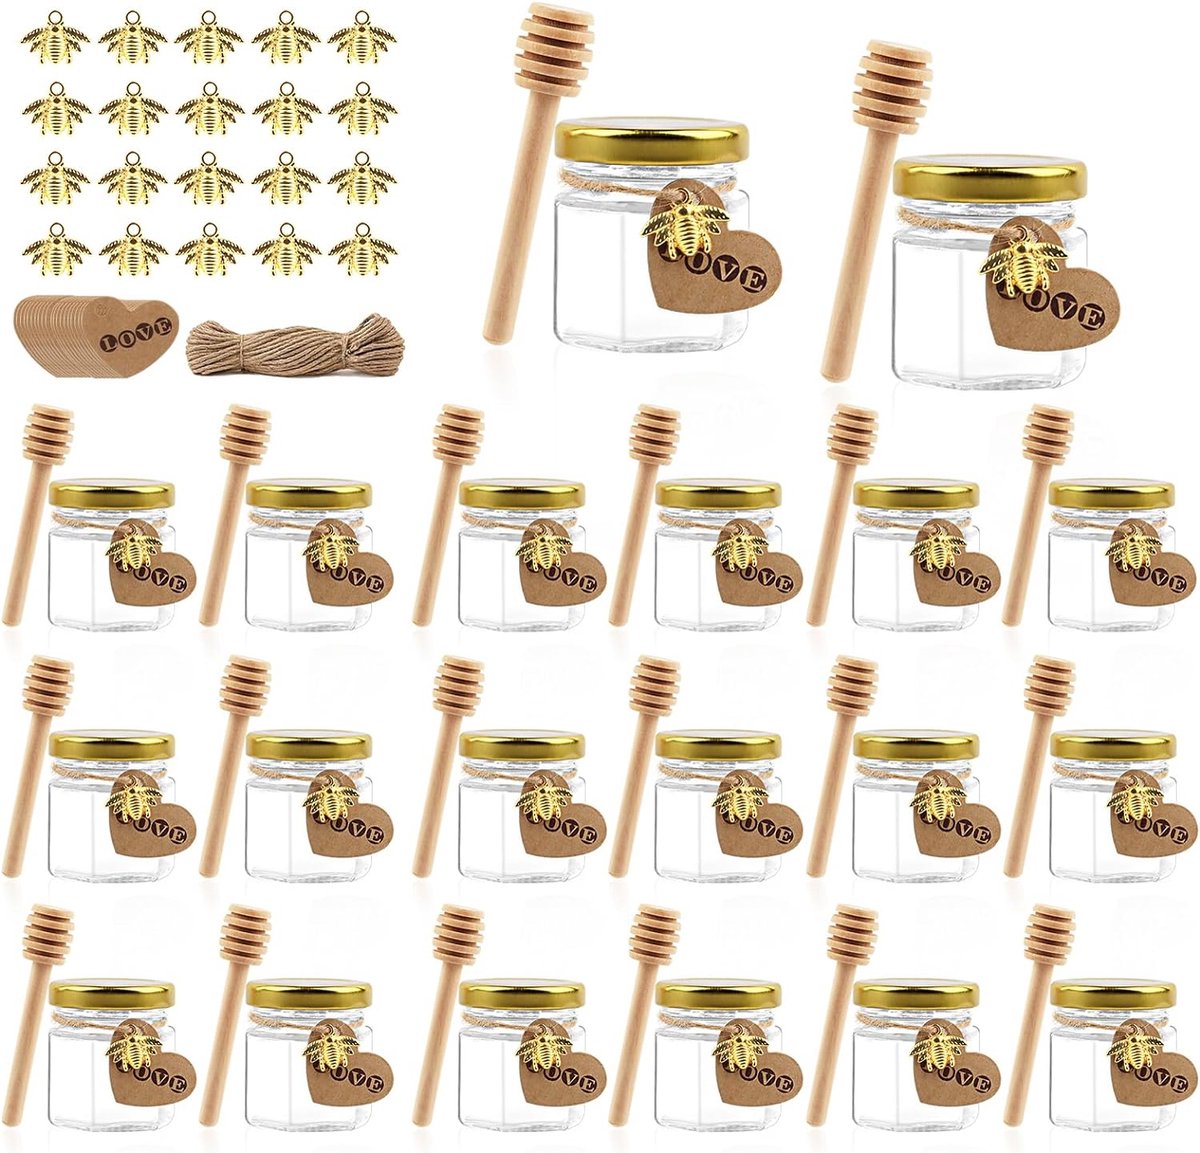 mini-honingglazen, 20 stuks, 45 ml, inmaakpotten, kleine jampotten met houten lepels, gouden deksels, bijenhangers, mini-honingglazen van glas, voor geschenken en huwelijksgeschenken